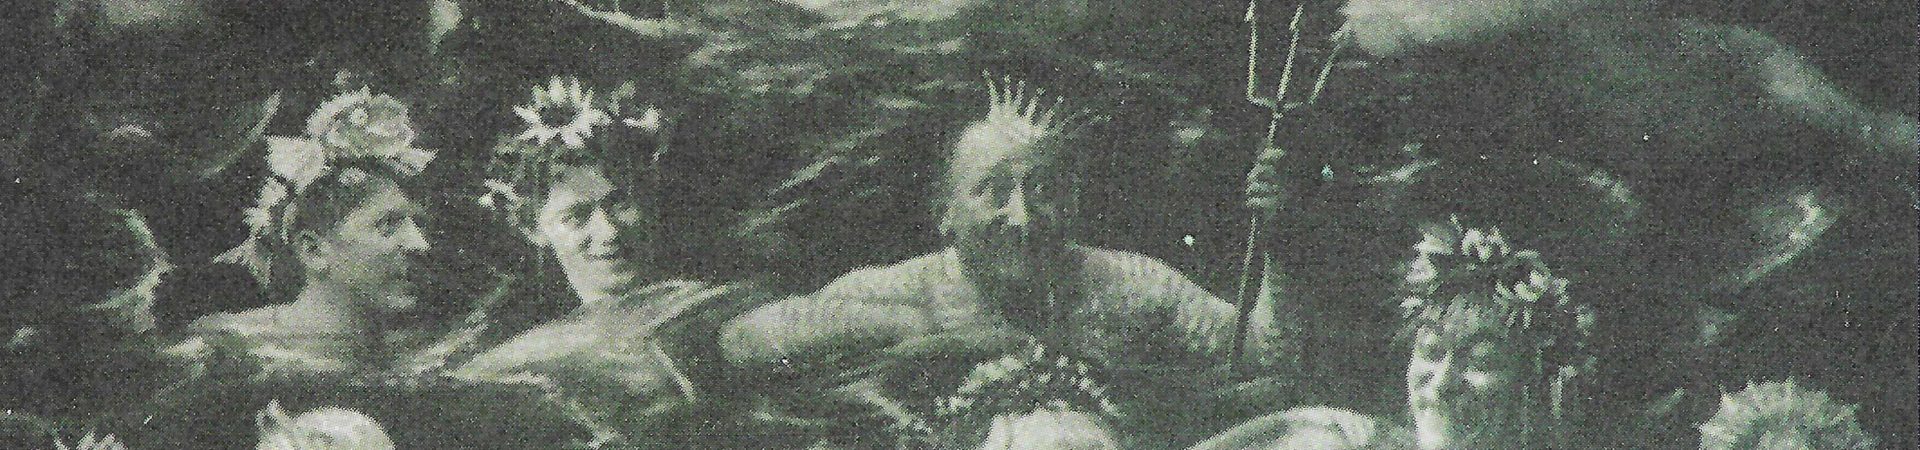 Loreley - Divertissementchen 1889 - Wasserszene mit Poseidon und Nixen